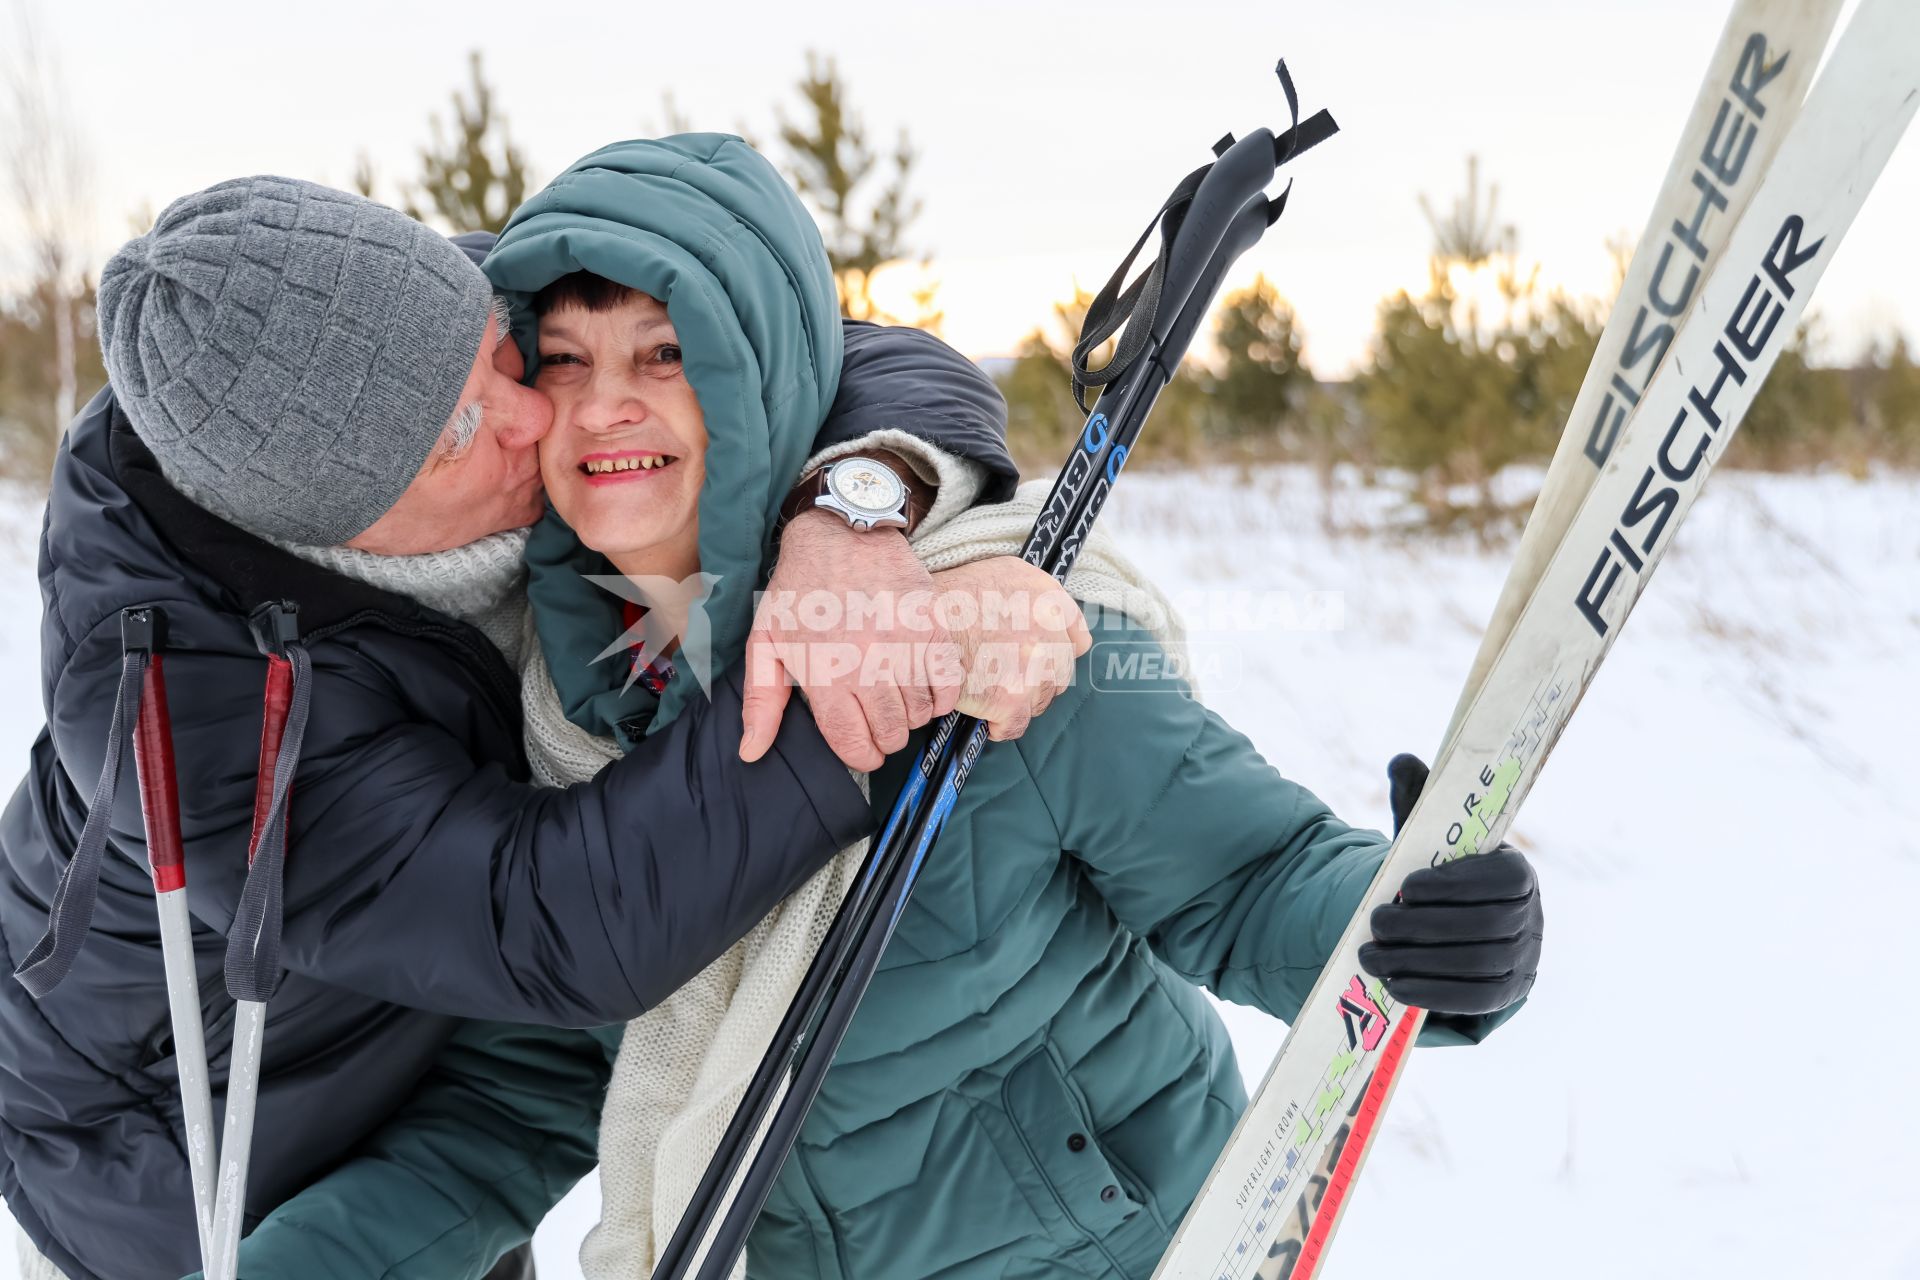 Красноярск. Пожилая пара во время лыжной прогулки.